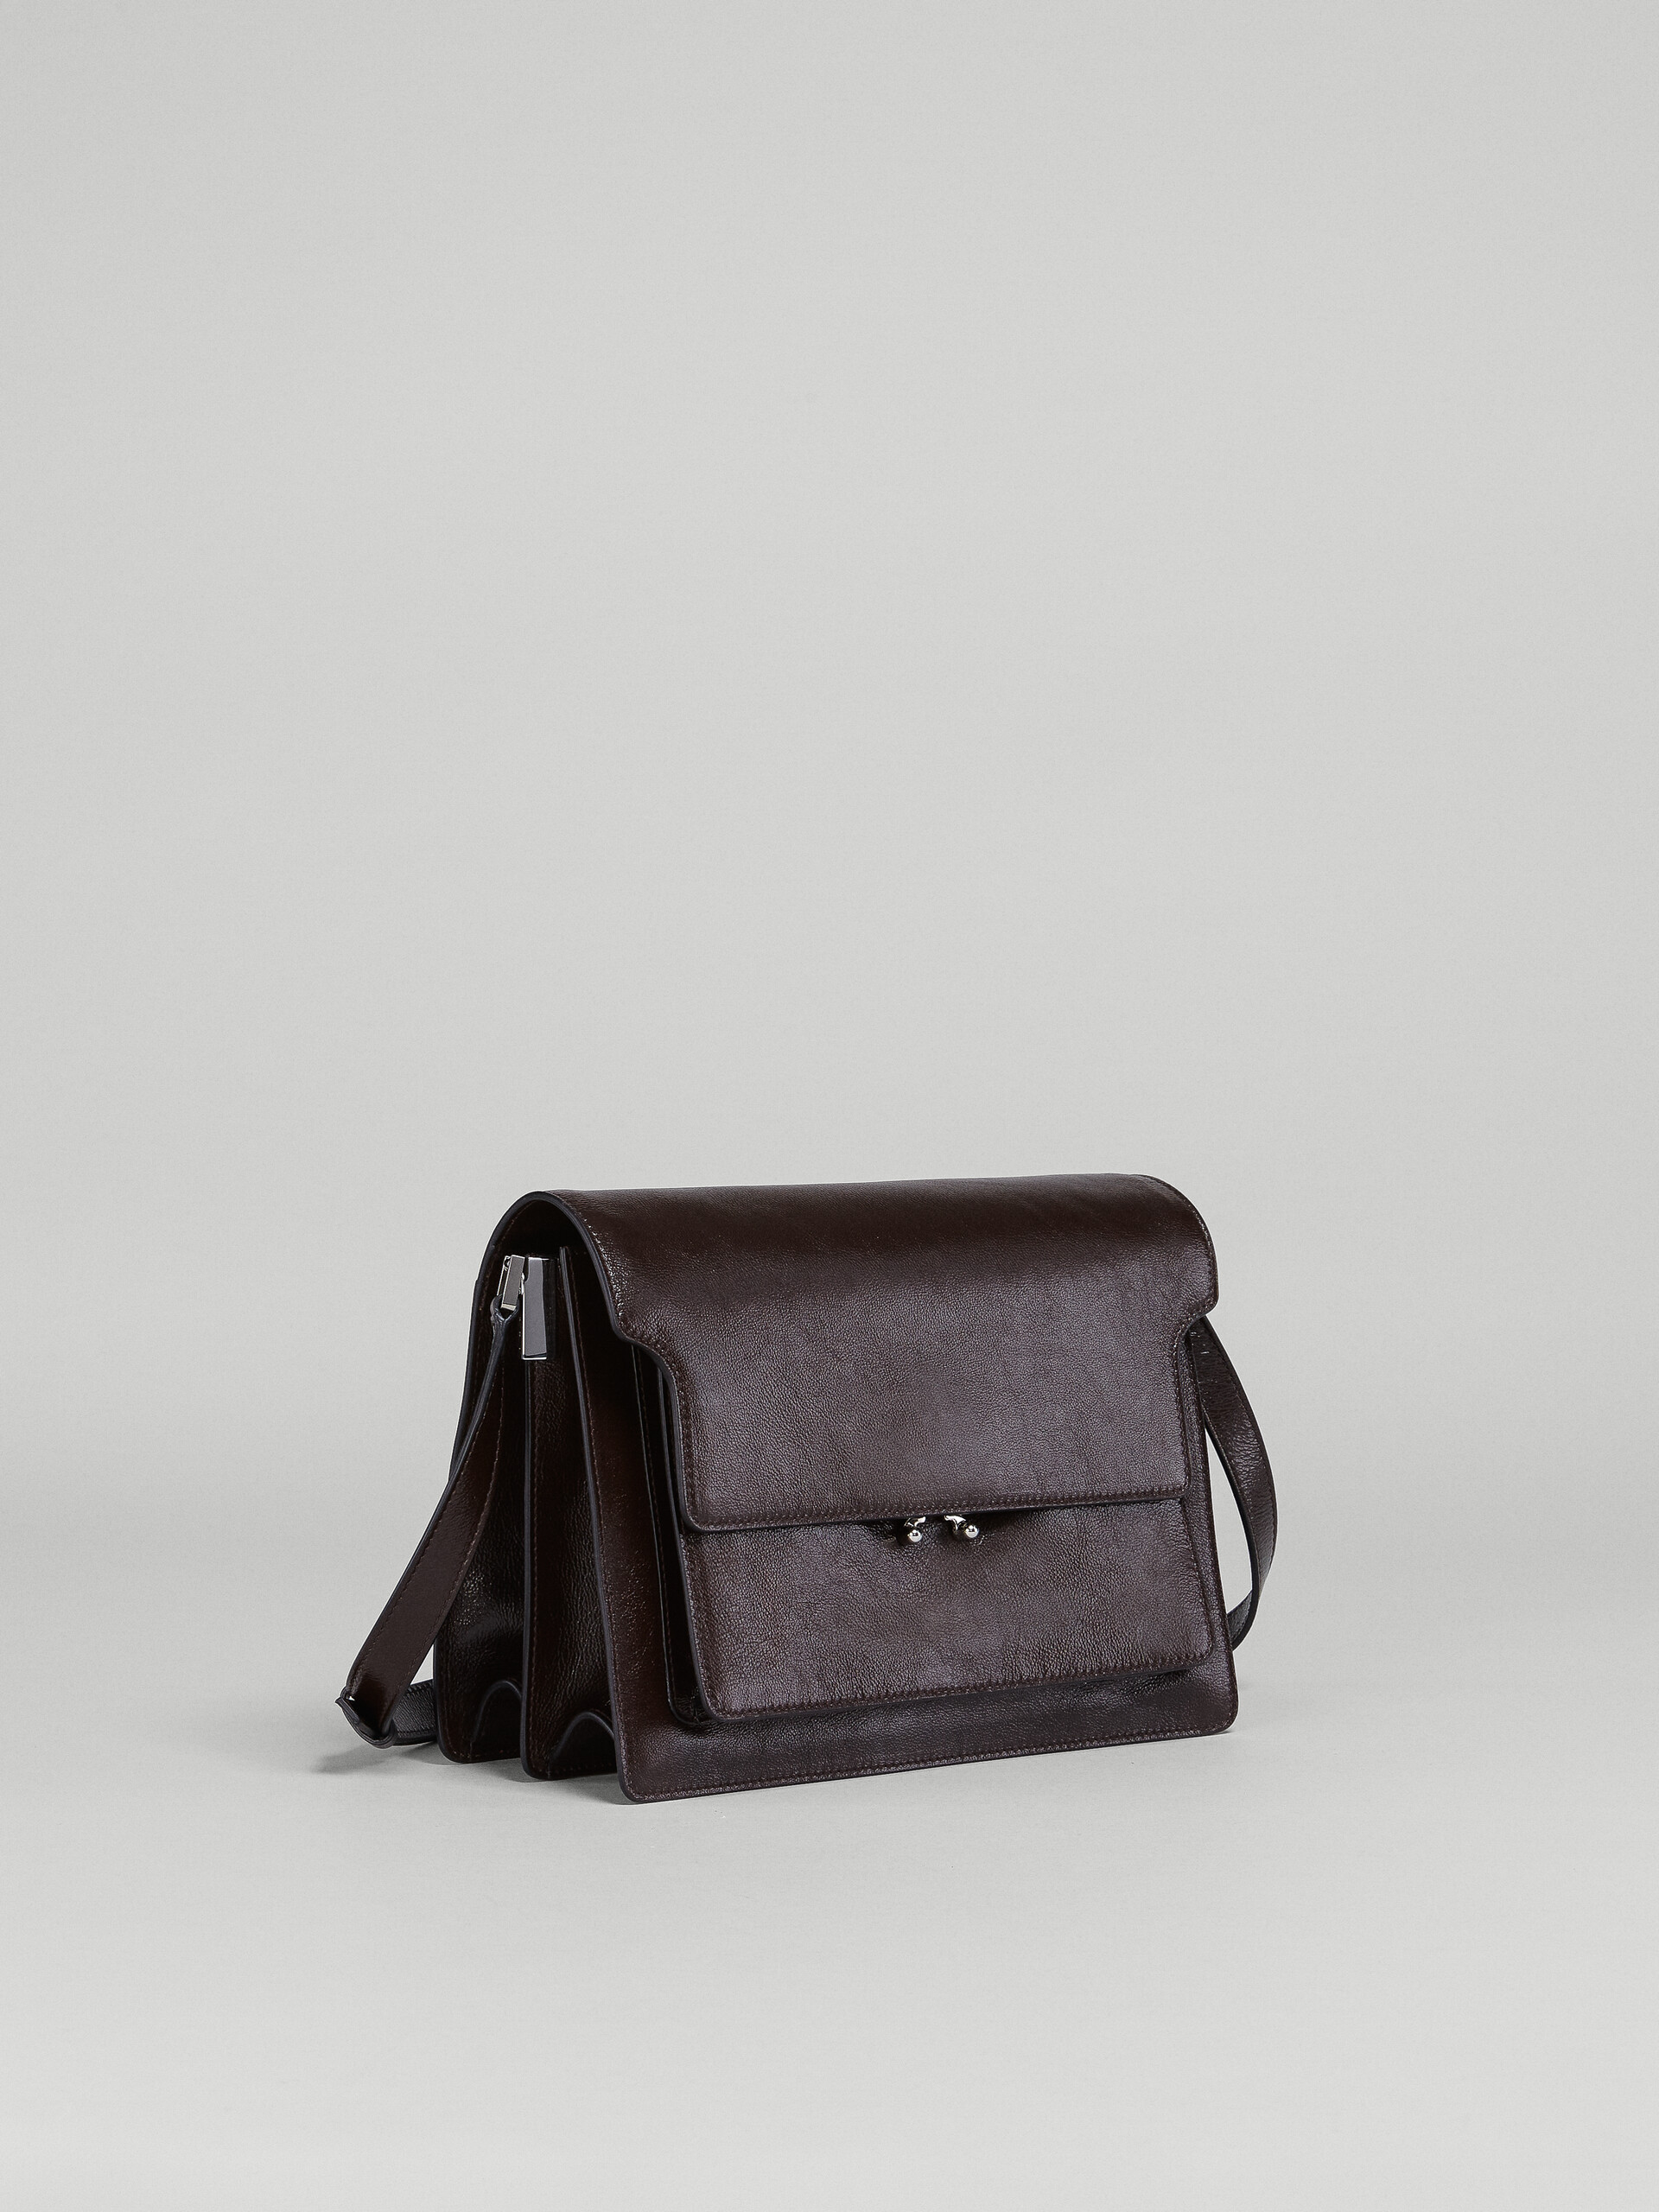 TRUNK SOFT bag grande in pelle marrone - Borse a spalla - Image 5